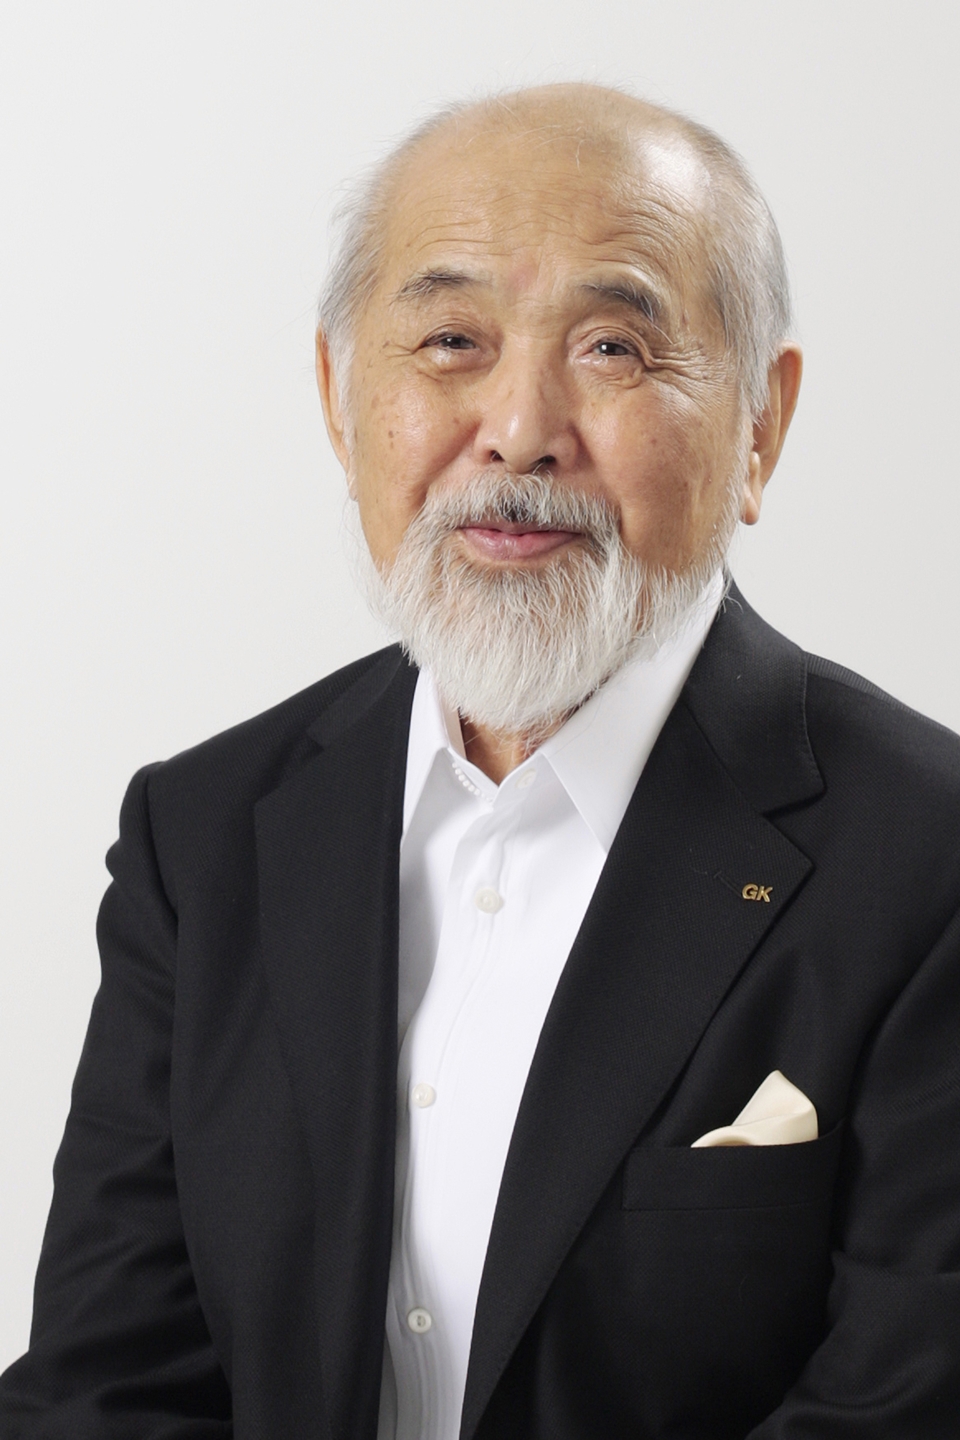 VMAX design legend Kenji Ekuan dies